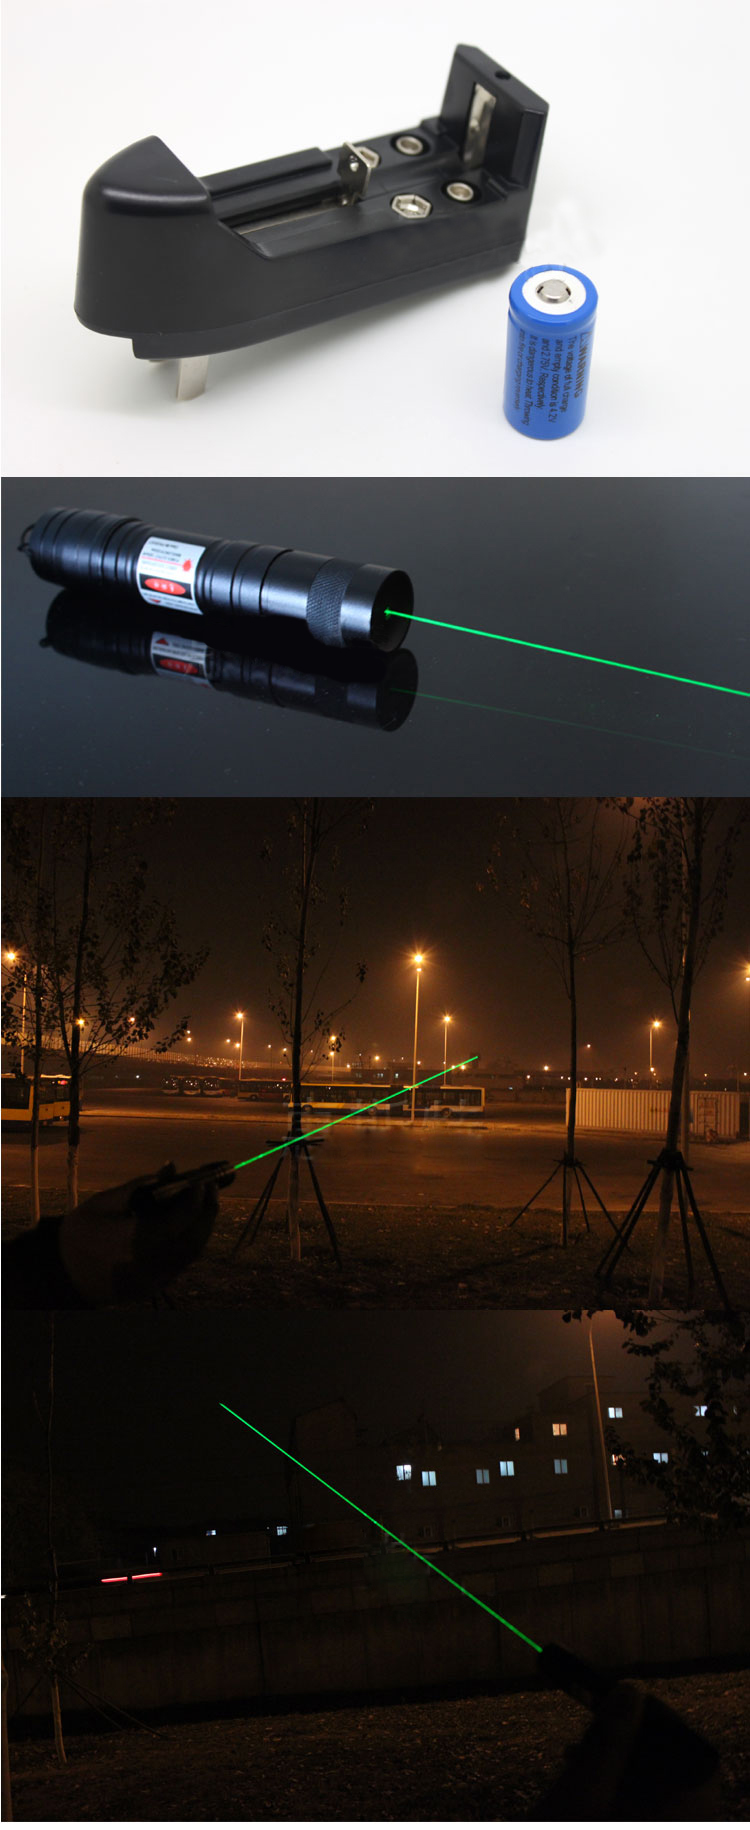 500mw laserpointer